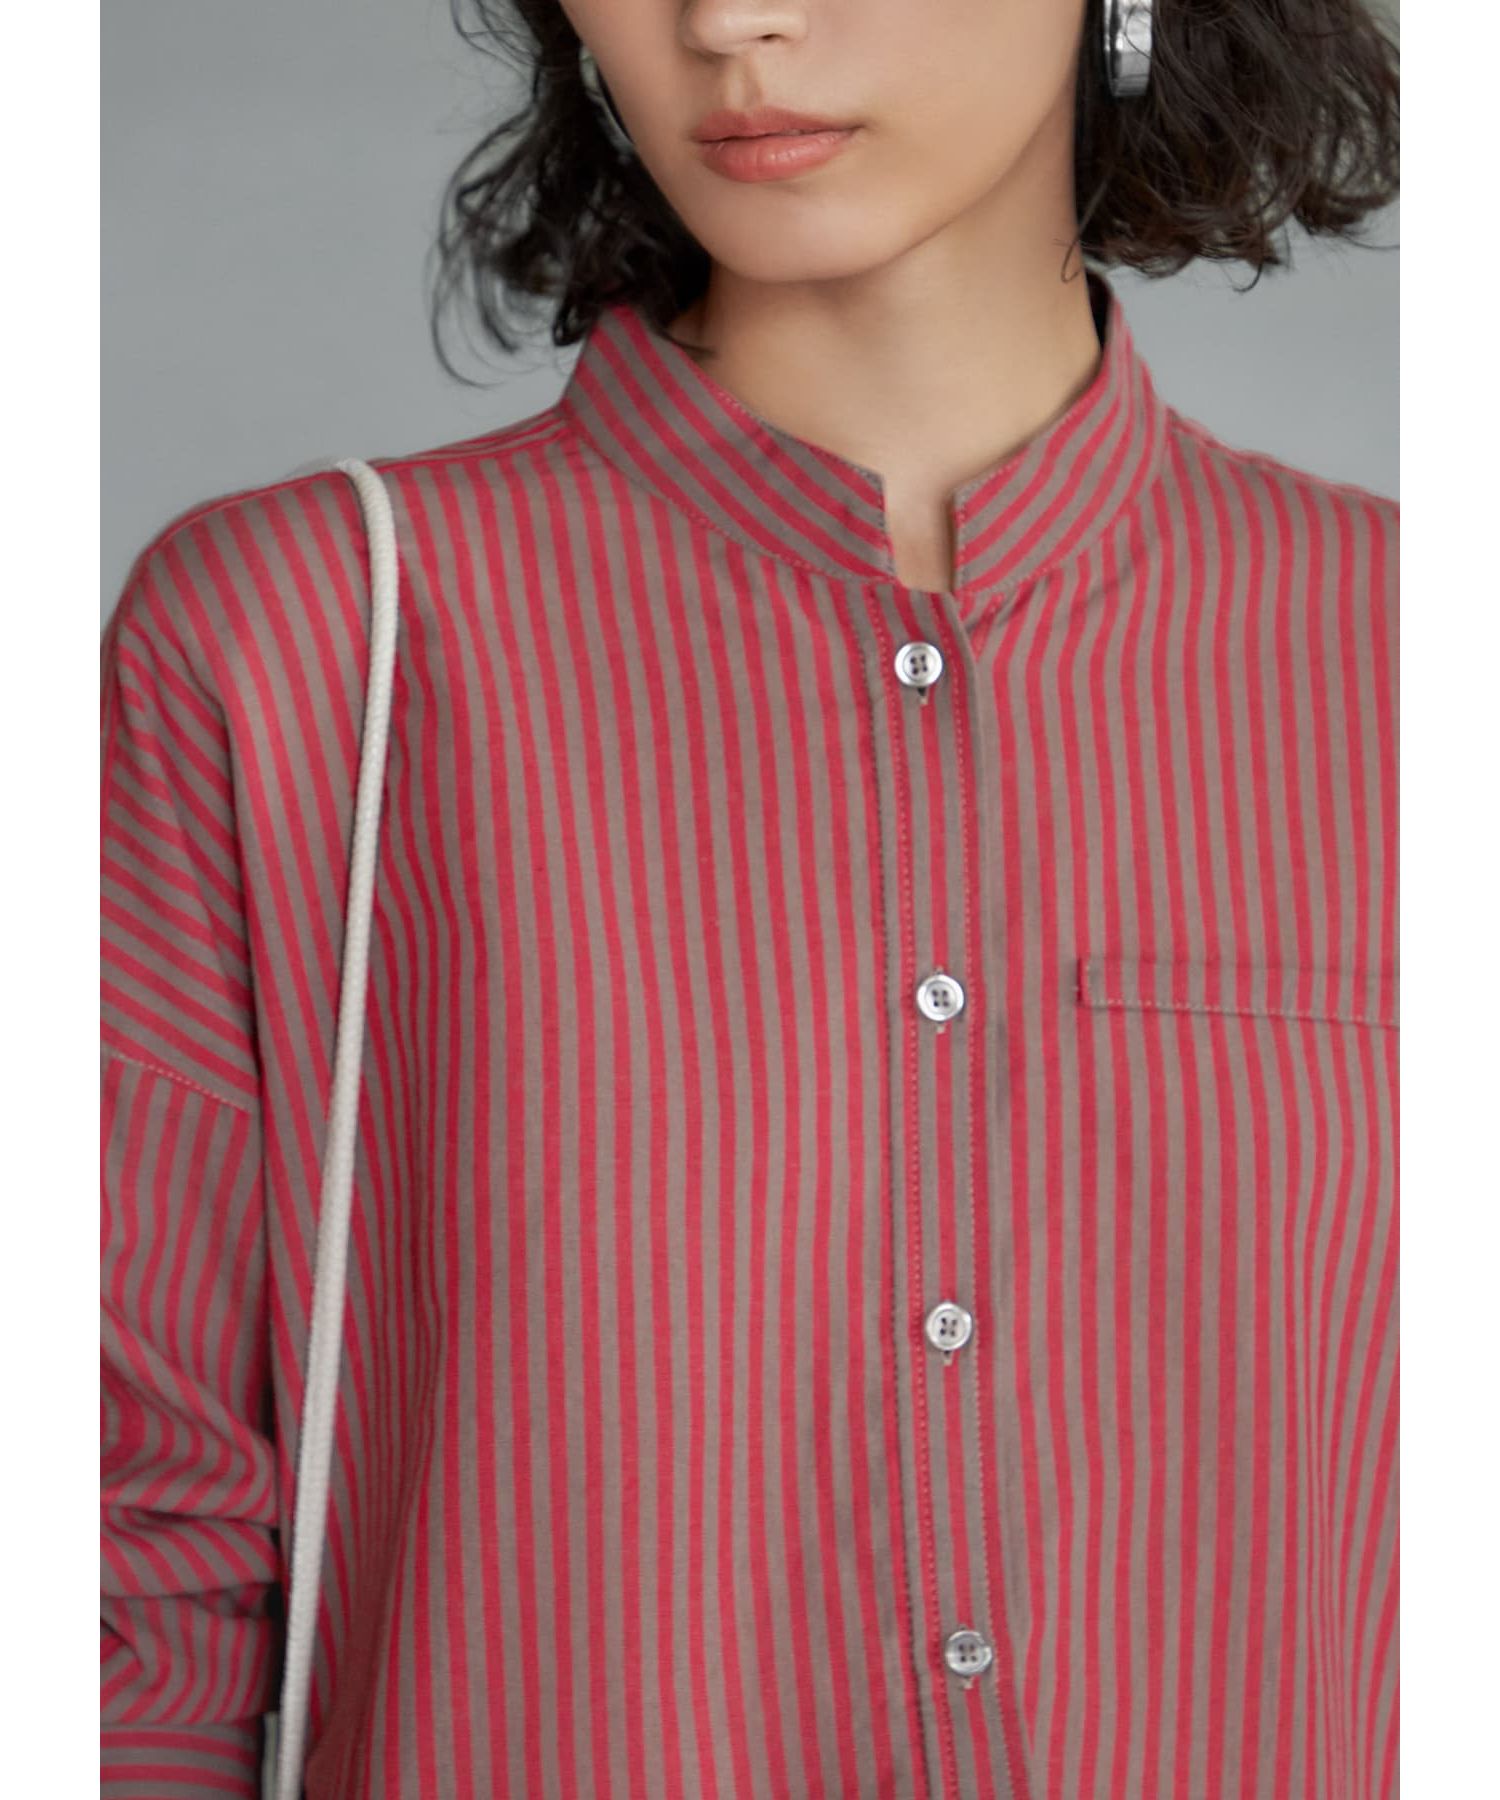 カラーナチュラルストライプ織りシャツ|STYLE DELI(スタイルデリ)の